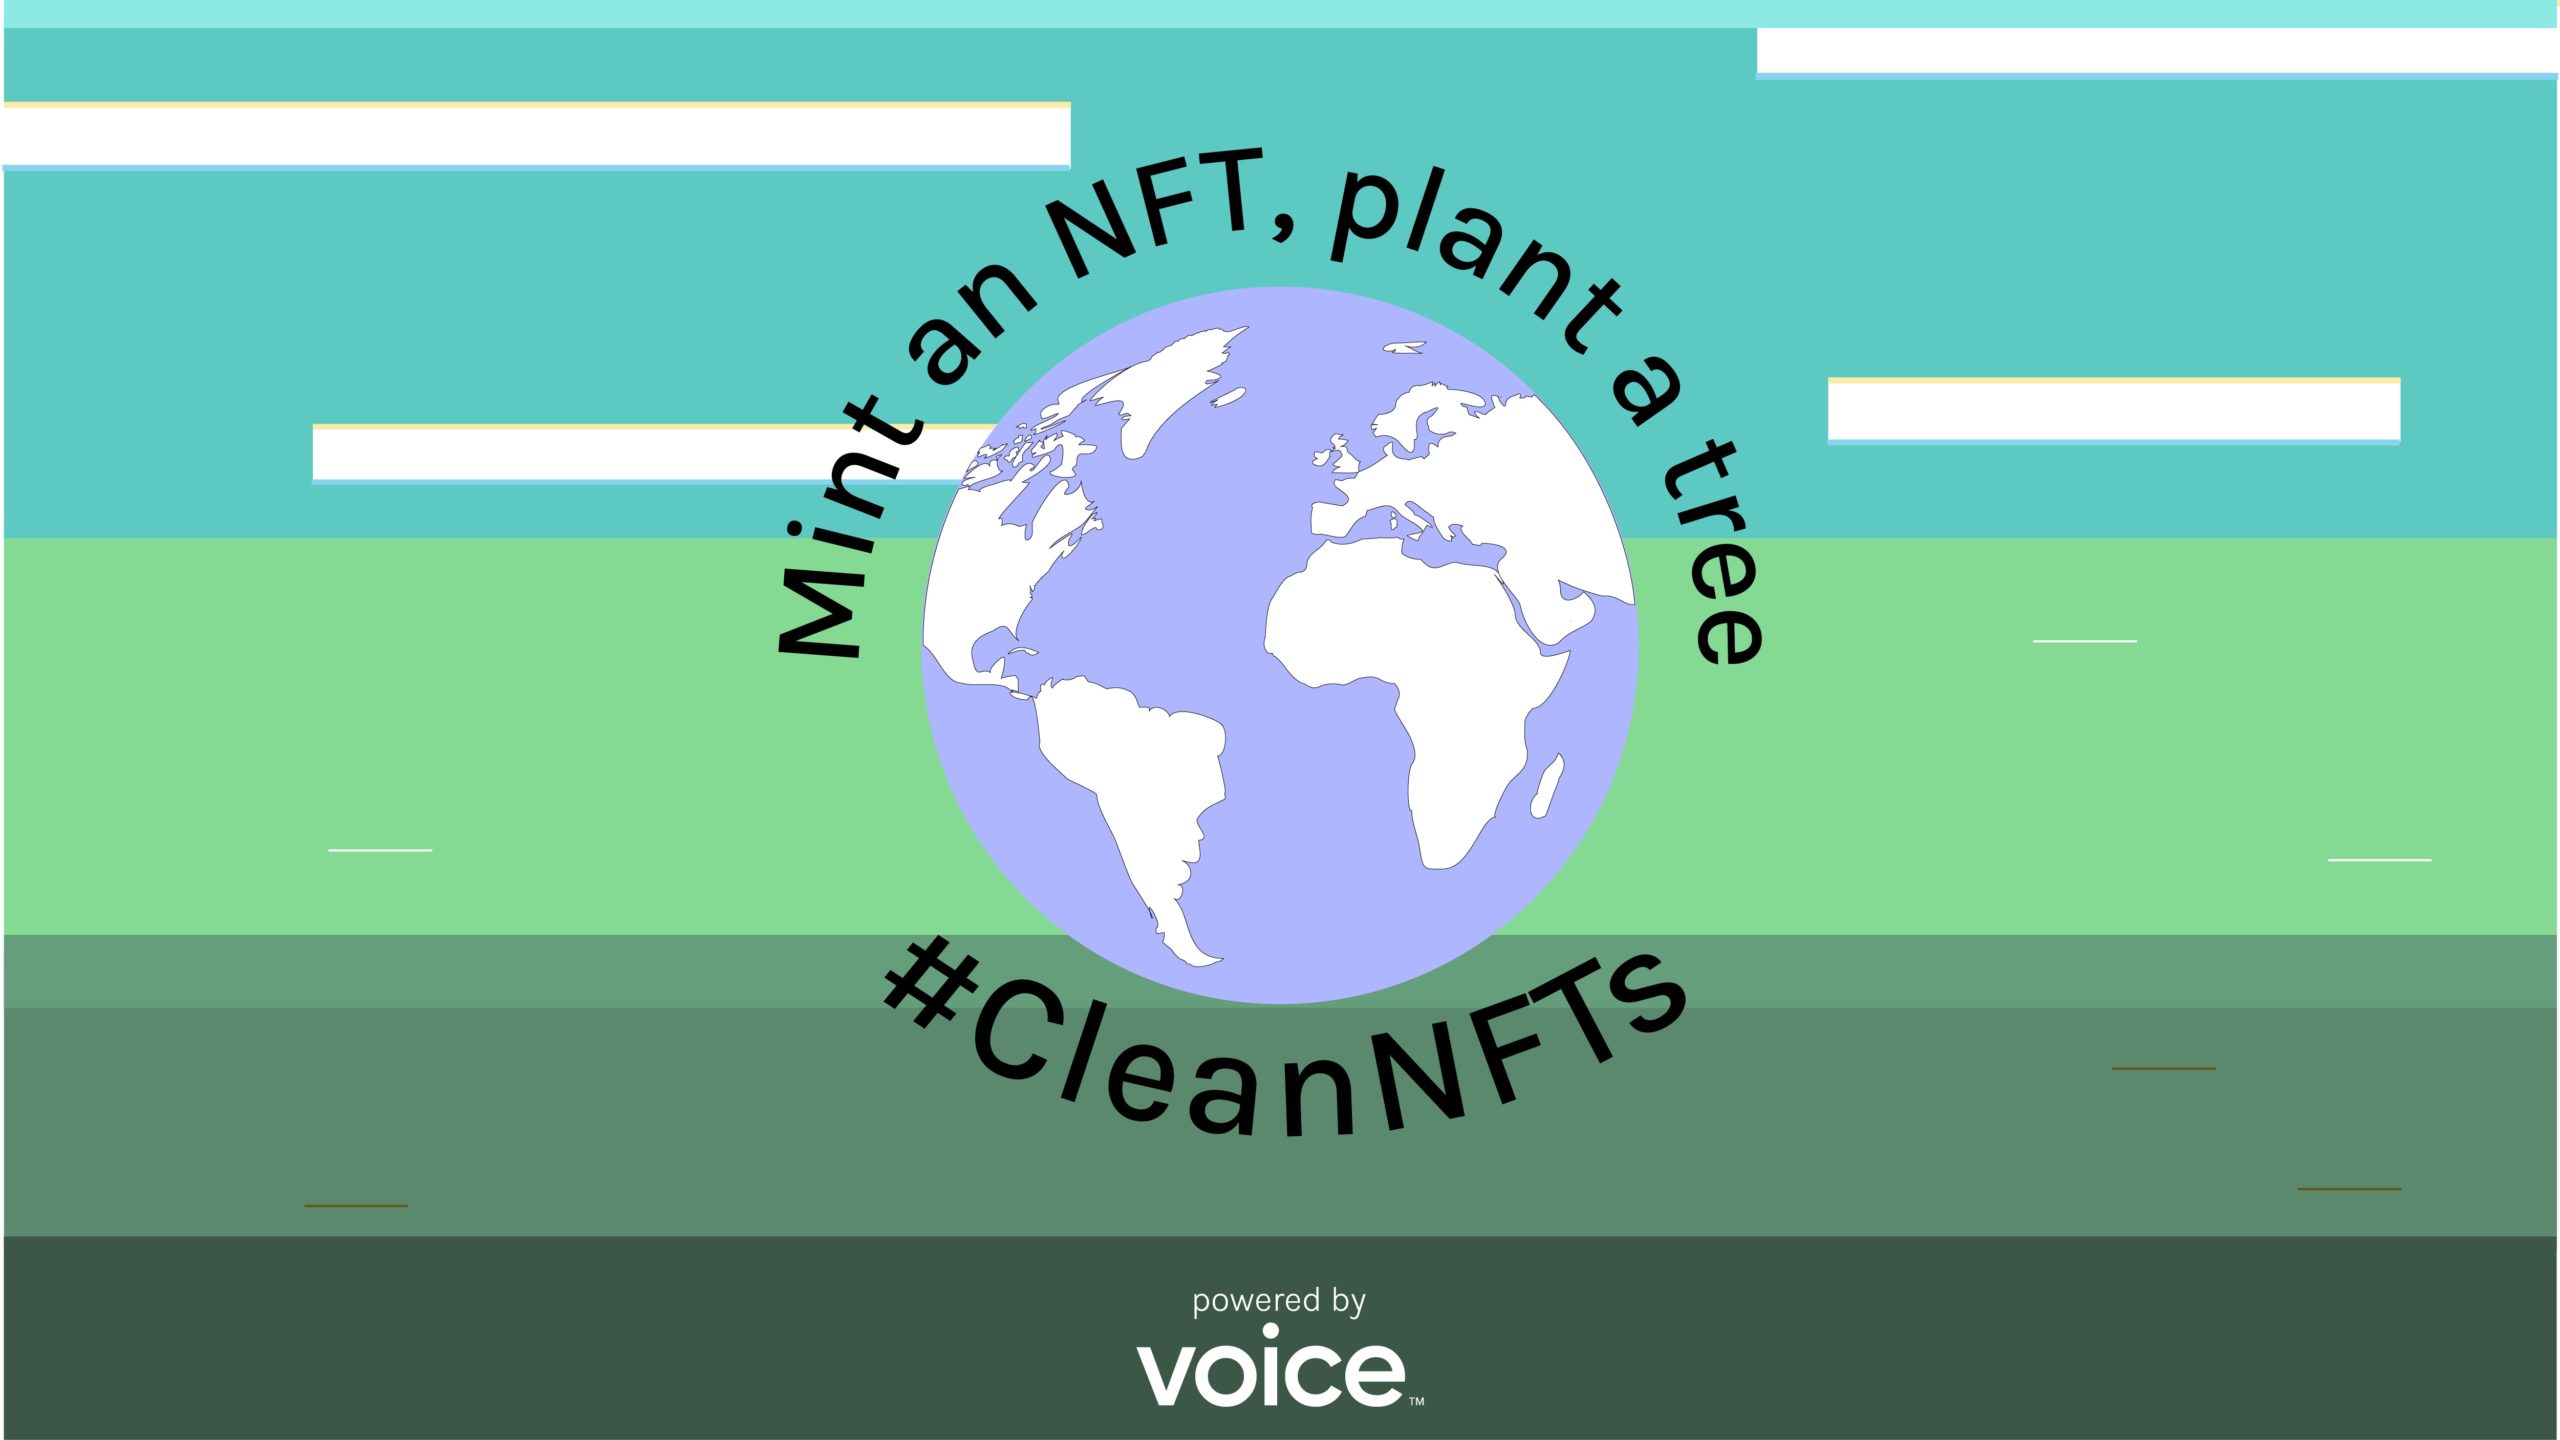 Voice #CleanNFTs